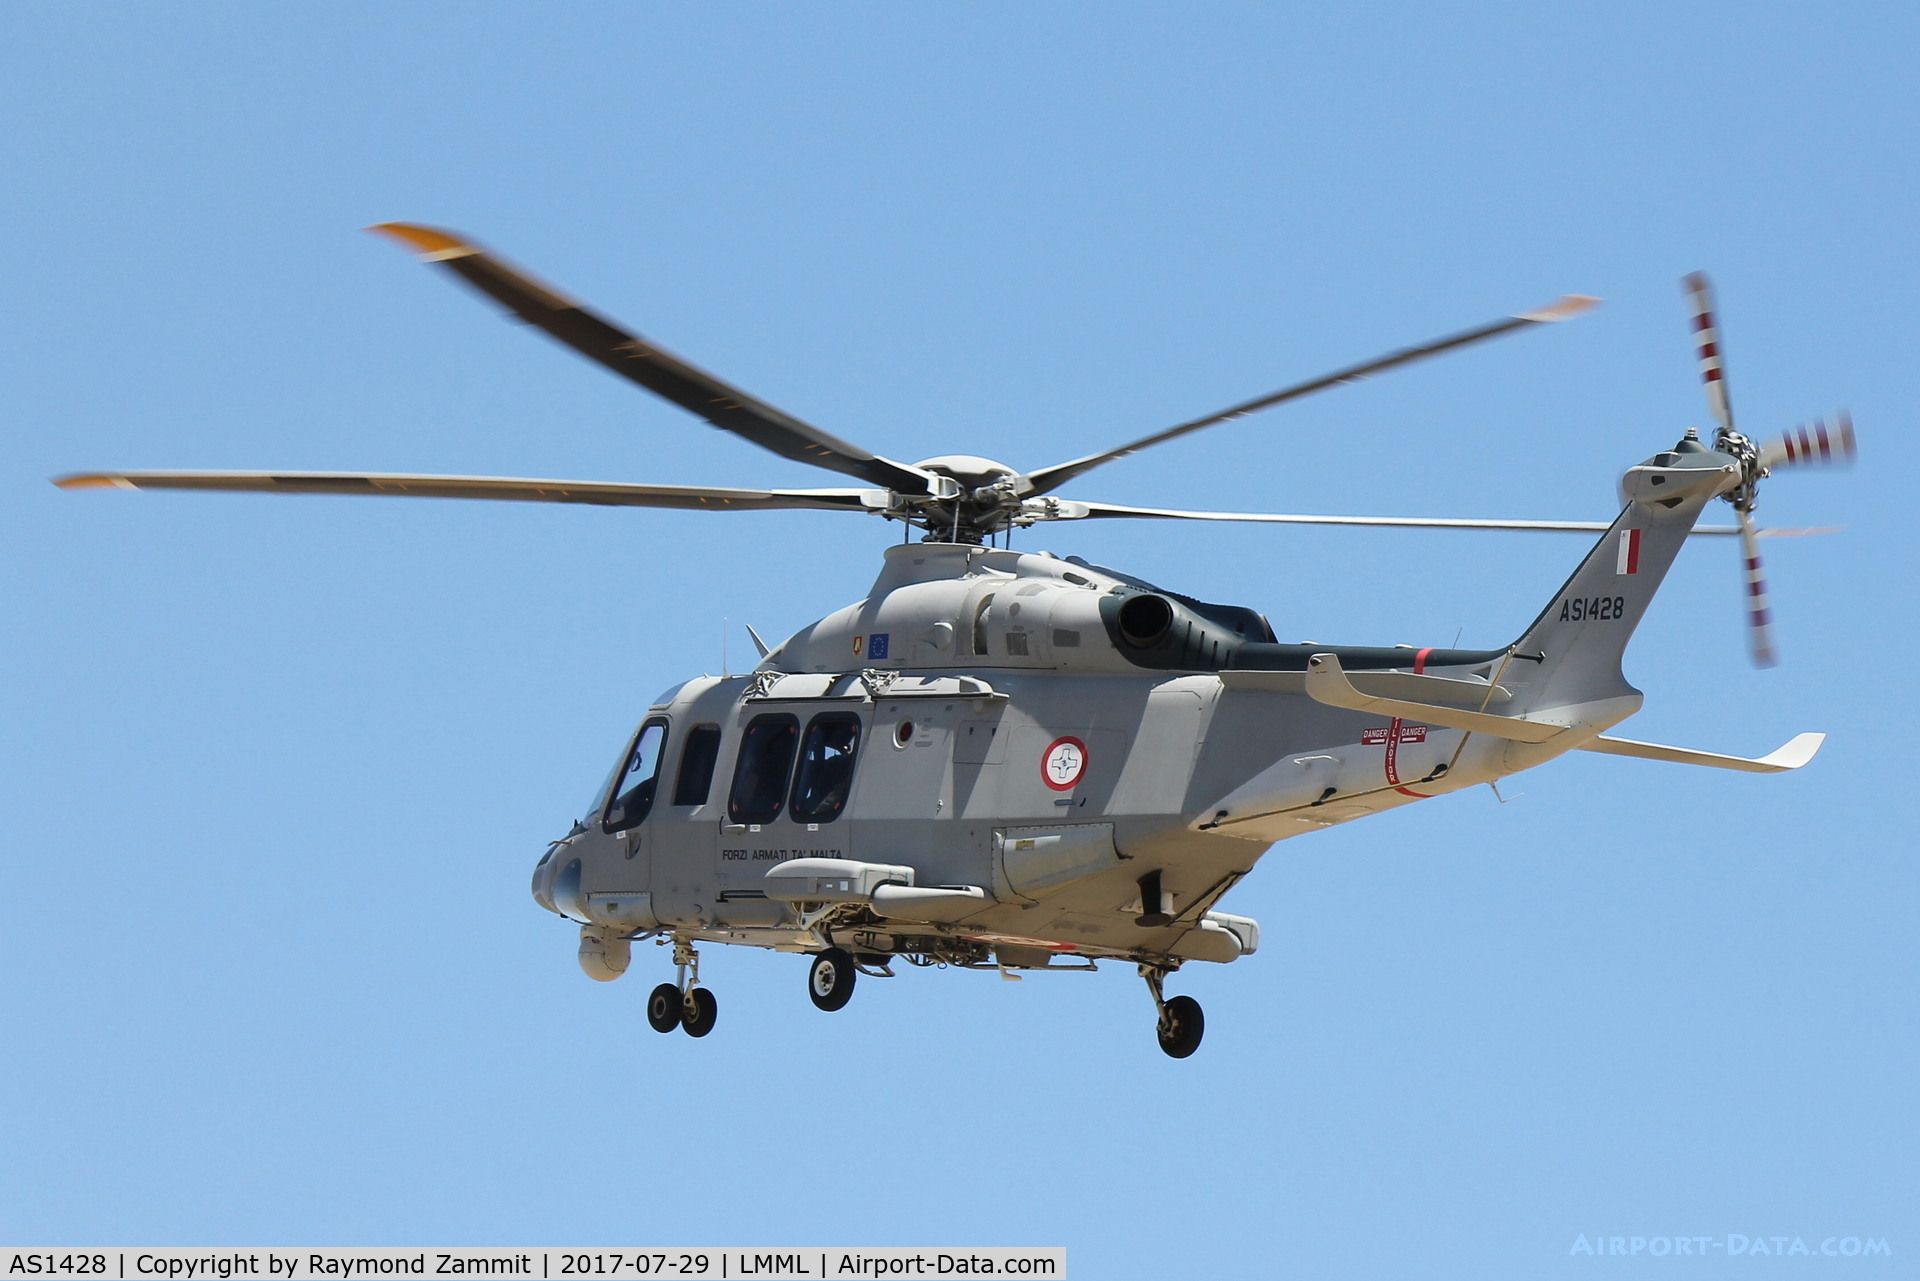 AS1428, 2014 AgustaWestland AW-139 C/N 31560, Agusta Westland AW-139 AS1429 Armed Force of Malta